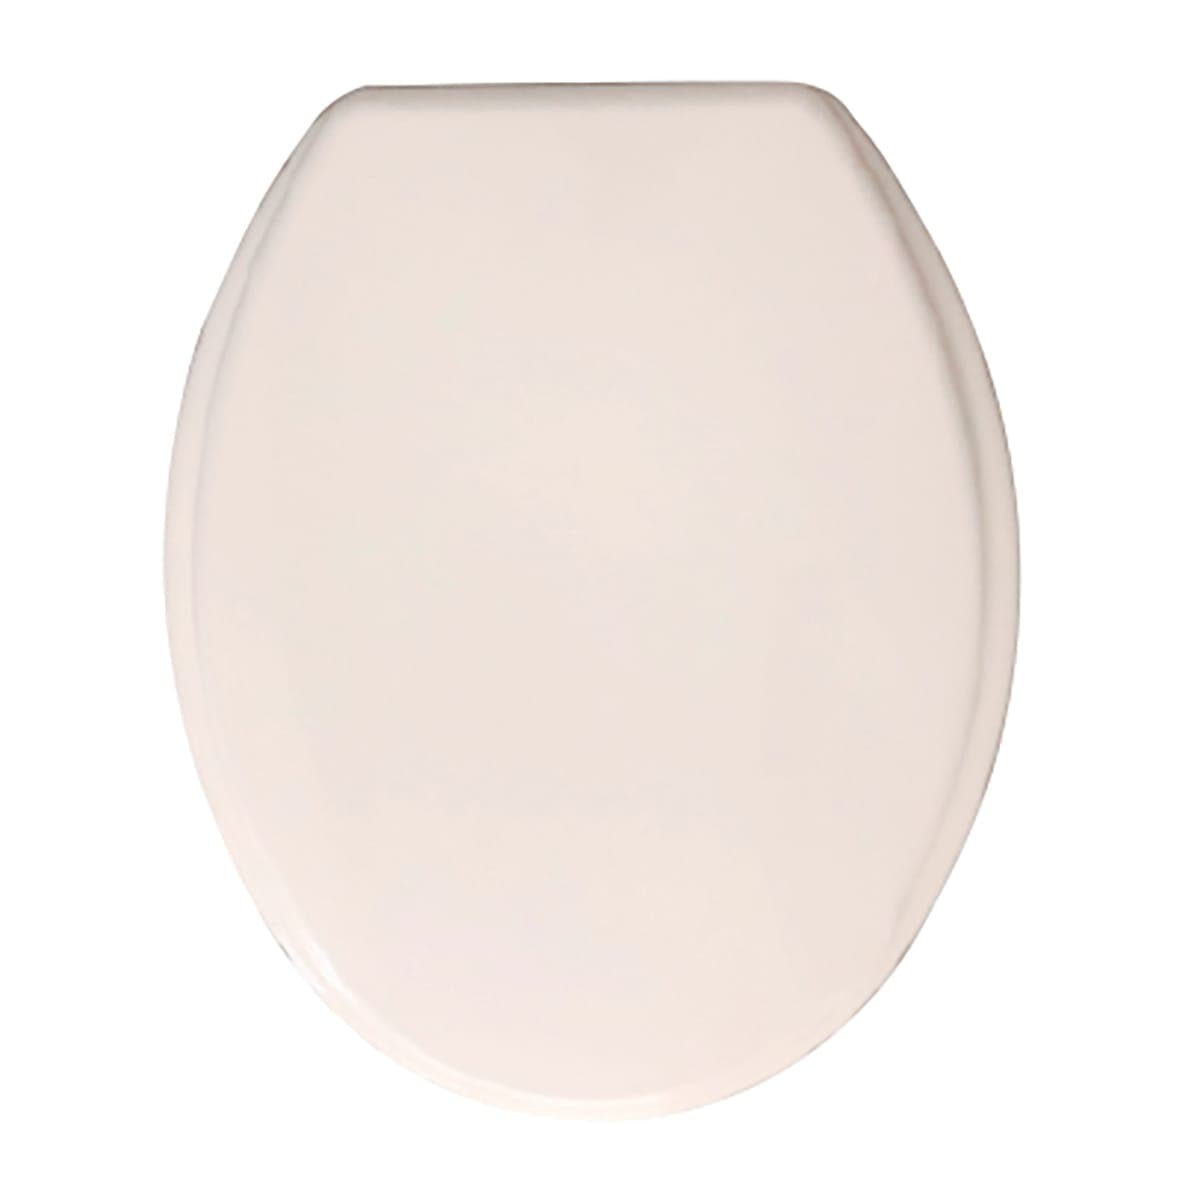 STANDARD WC SEAT CORTINA PLASTIC WHITE CERNIRE NYLON - best price from Maltashopper.com BR430001946